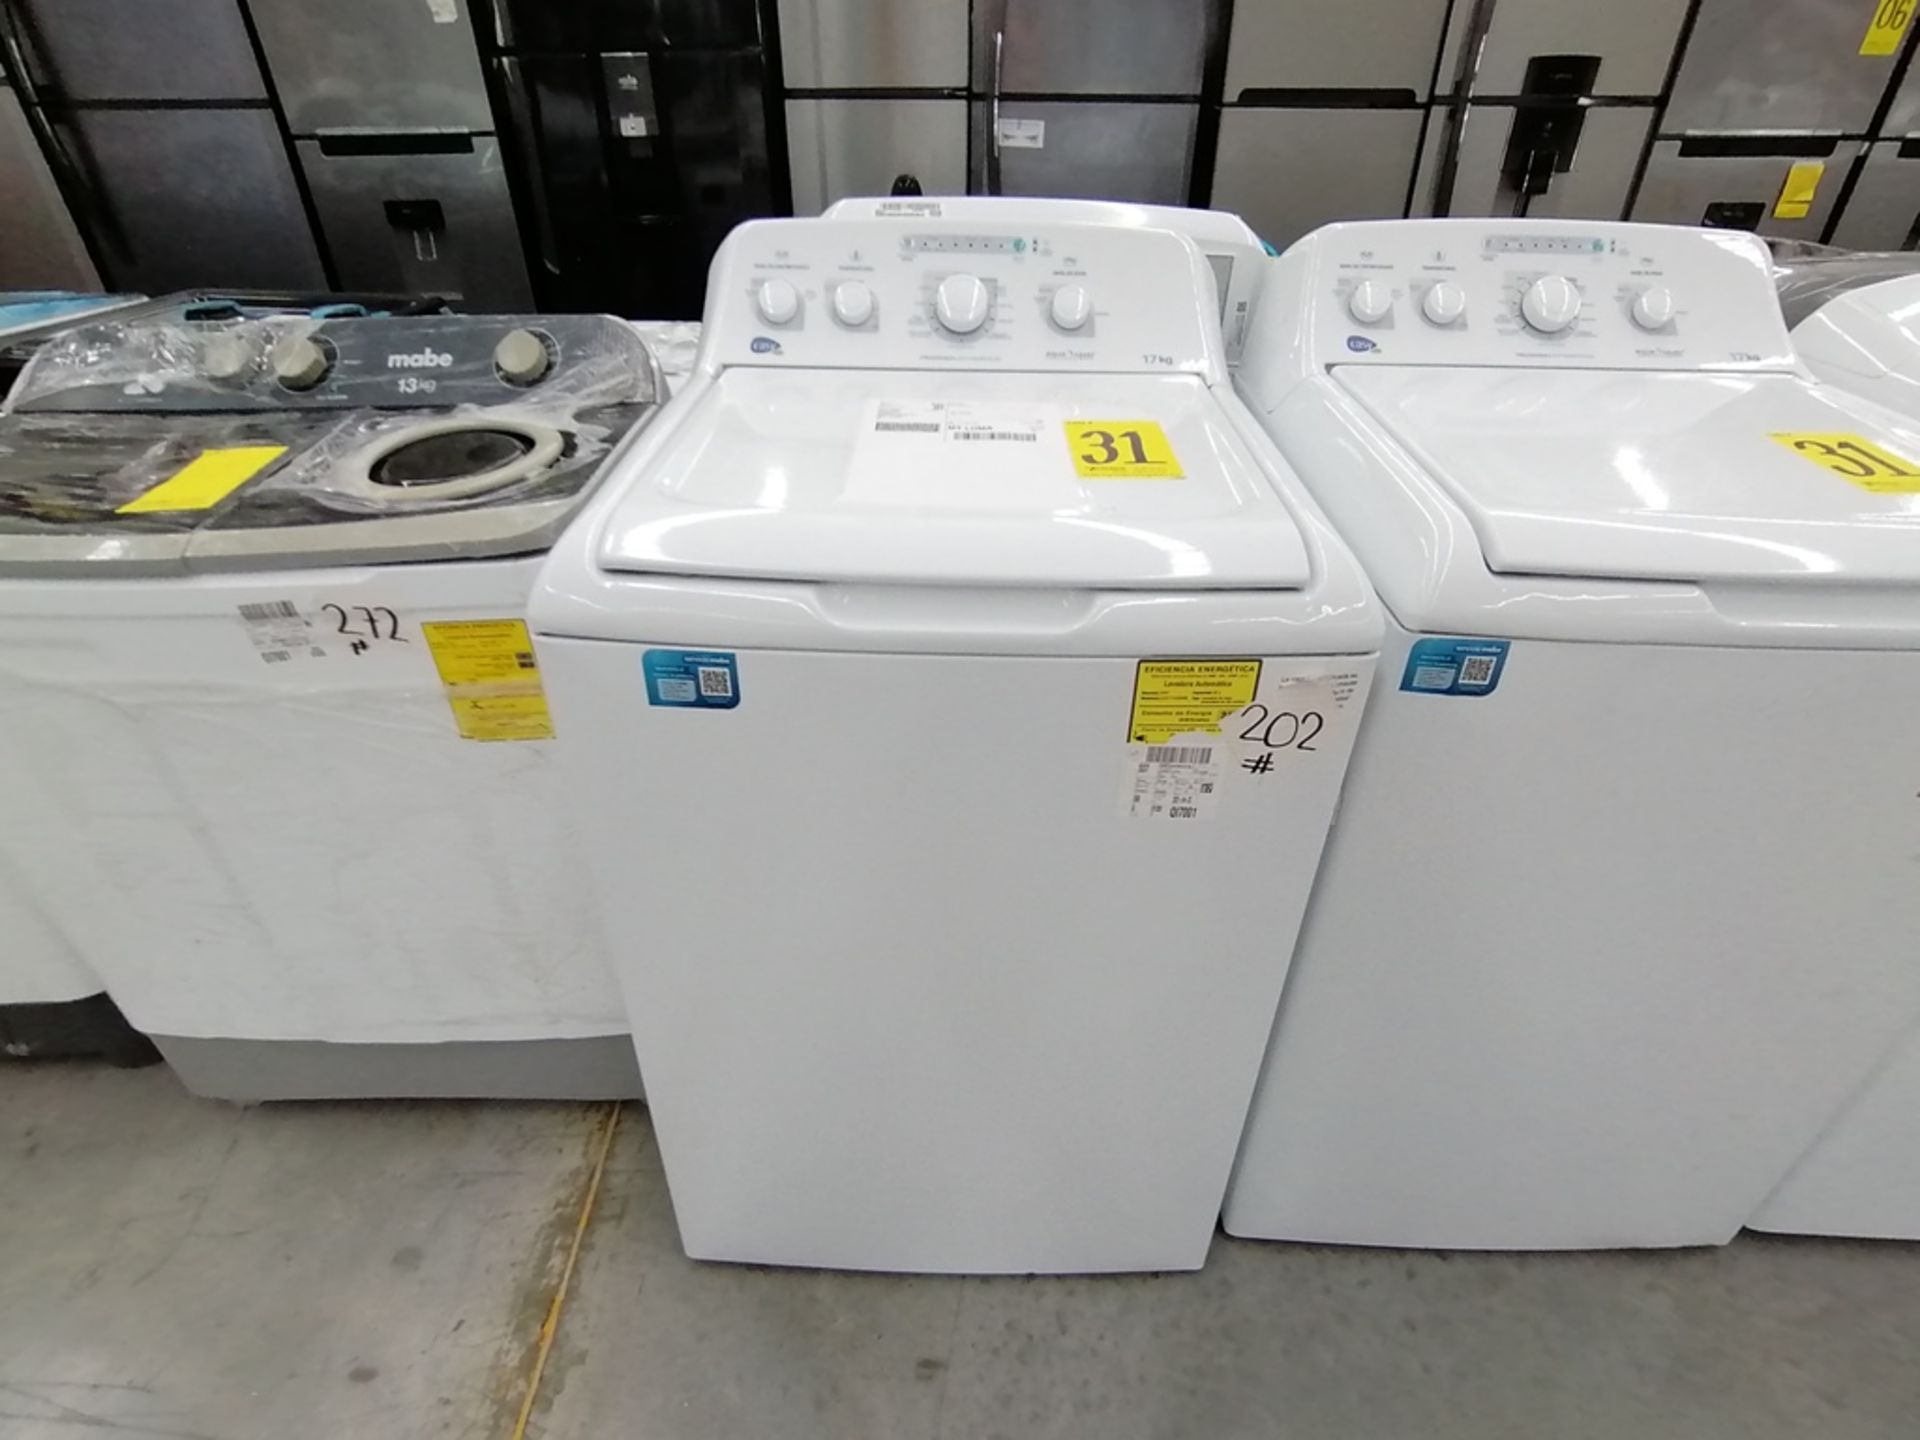 Lote de 3 lavadoras contiene: 1 Lavadora de 17KG, Marca Easy, Modelo LEA77114CBAB03, Serie 2105S522 - Image 11 of 30